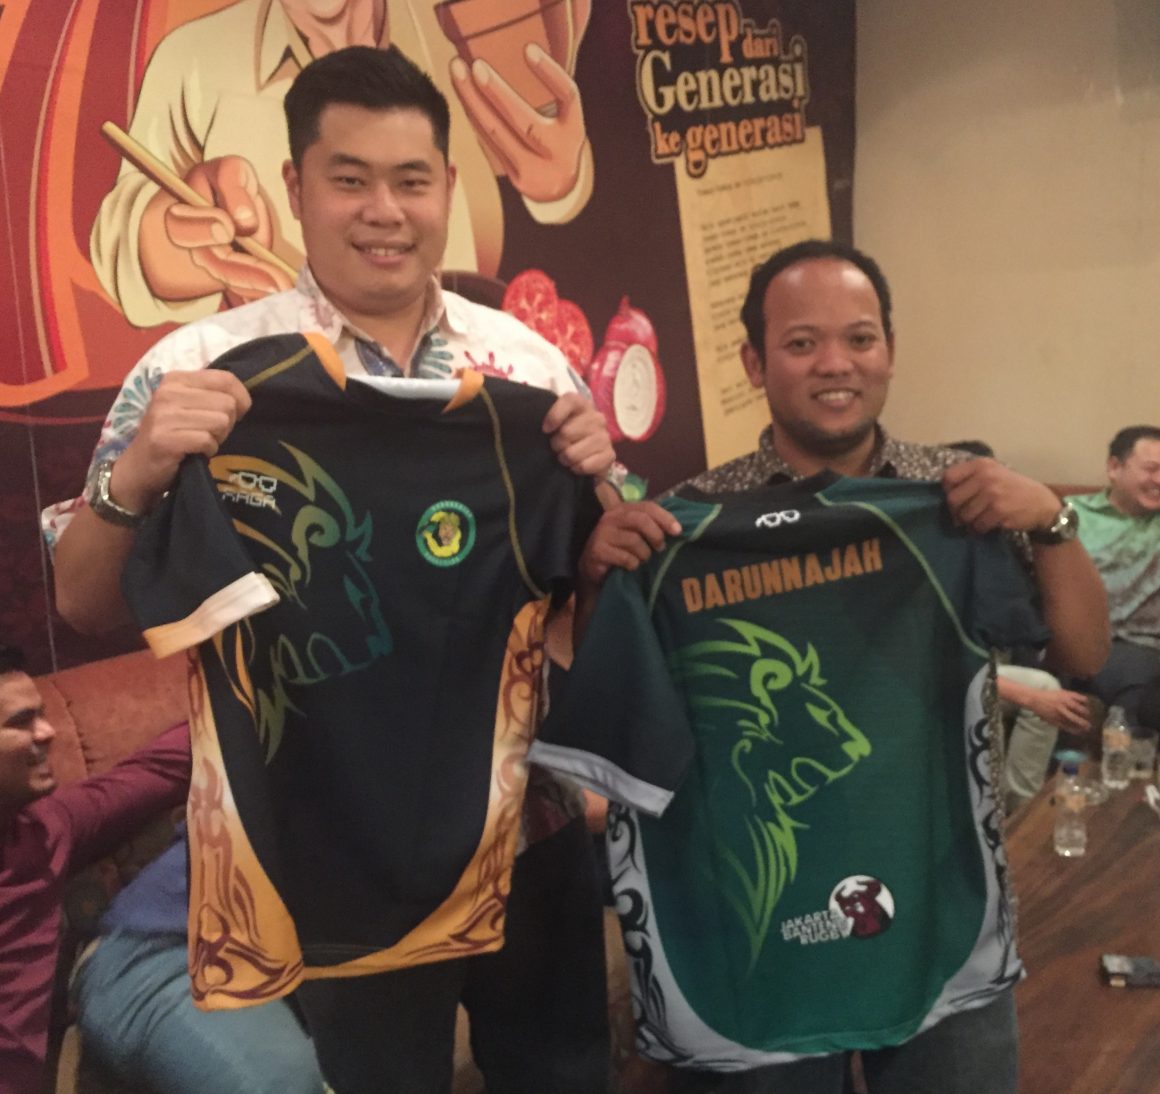 Jakarta Banteng officially adopt Darunnajah Rugby